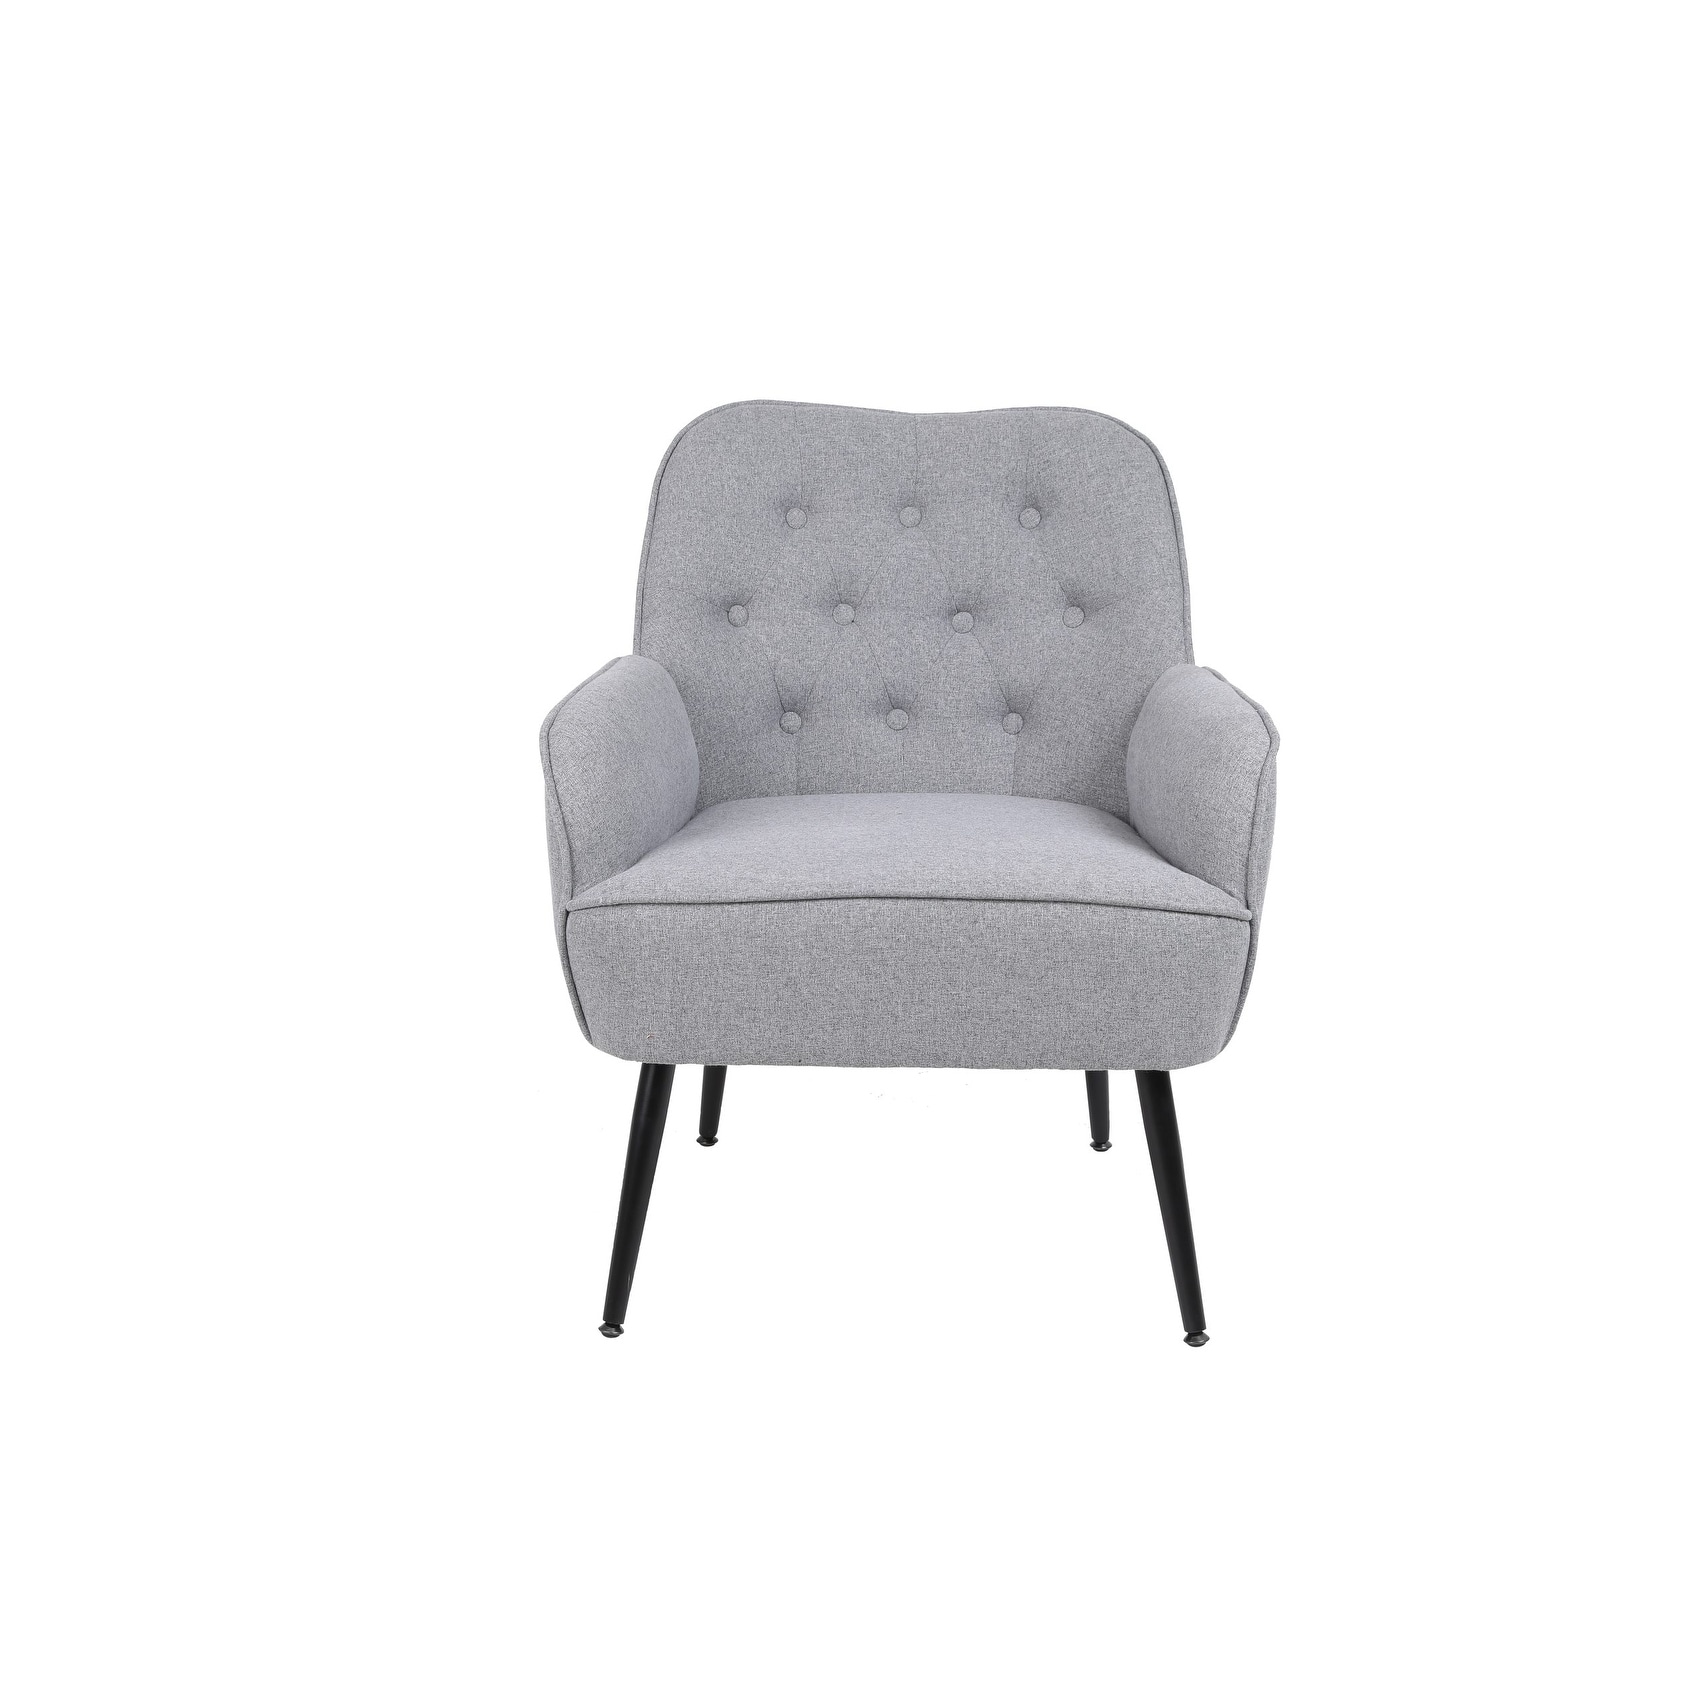 Modern Mid Century Velvet Chair Sherpa Armchair For Living Room Bedroom Office